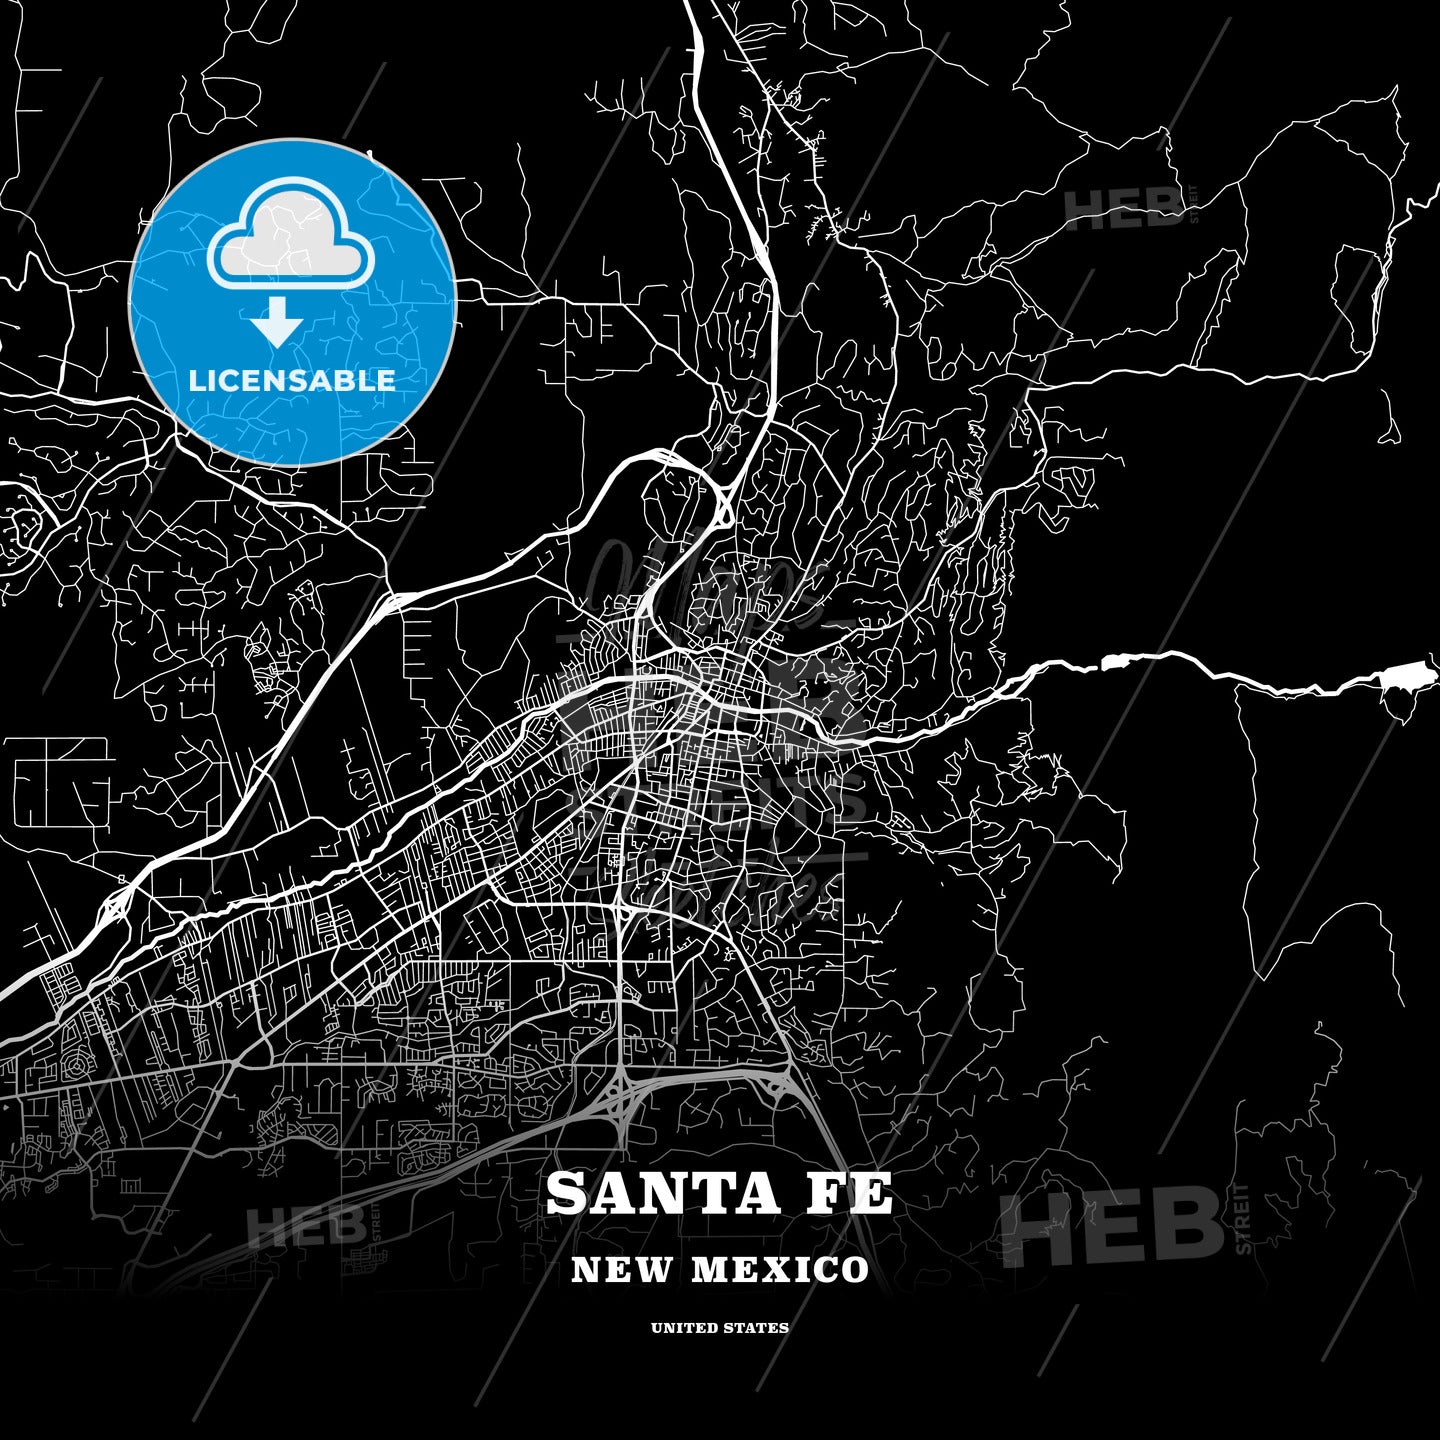 Santa Fe, New Mexico, USA map